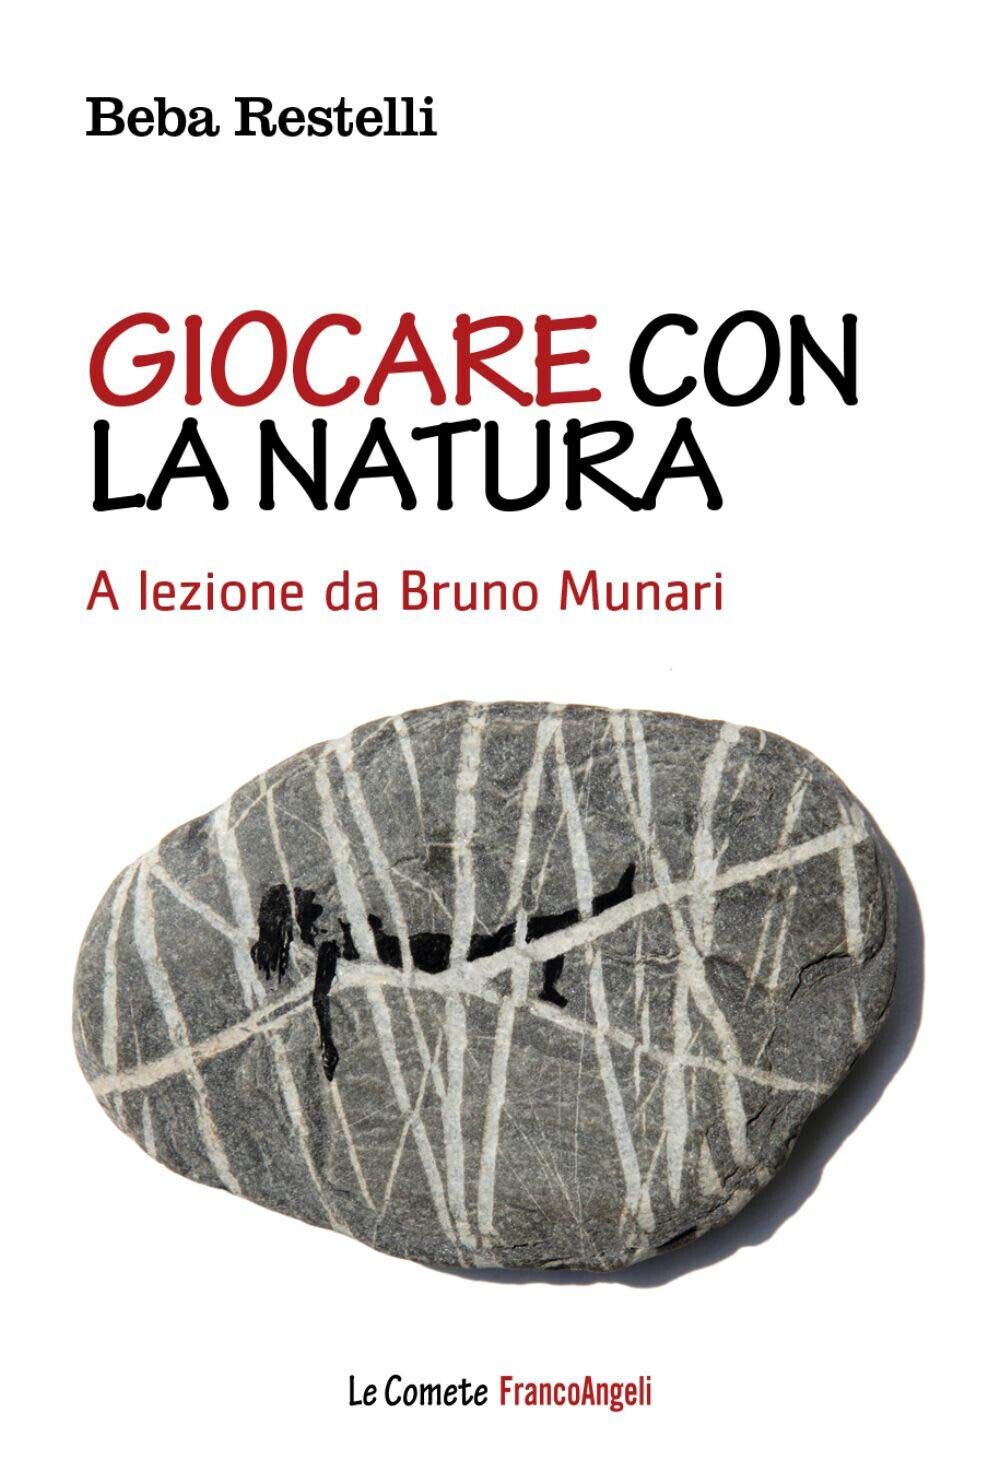 Giocare con la natura. A lezione - Bruno Munari di Beba Restelli - 2019